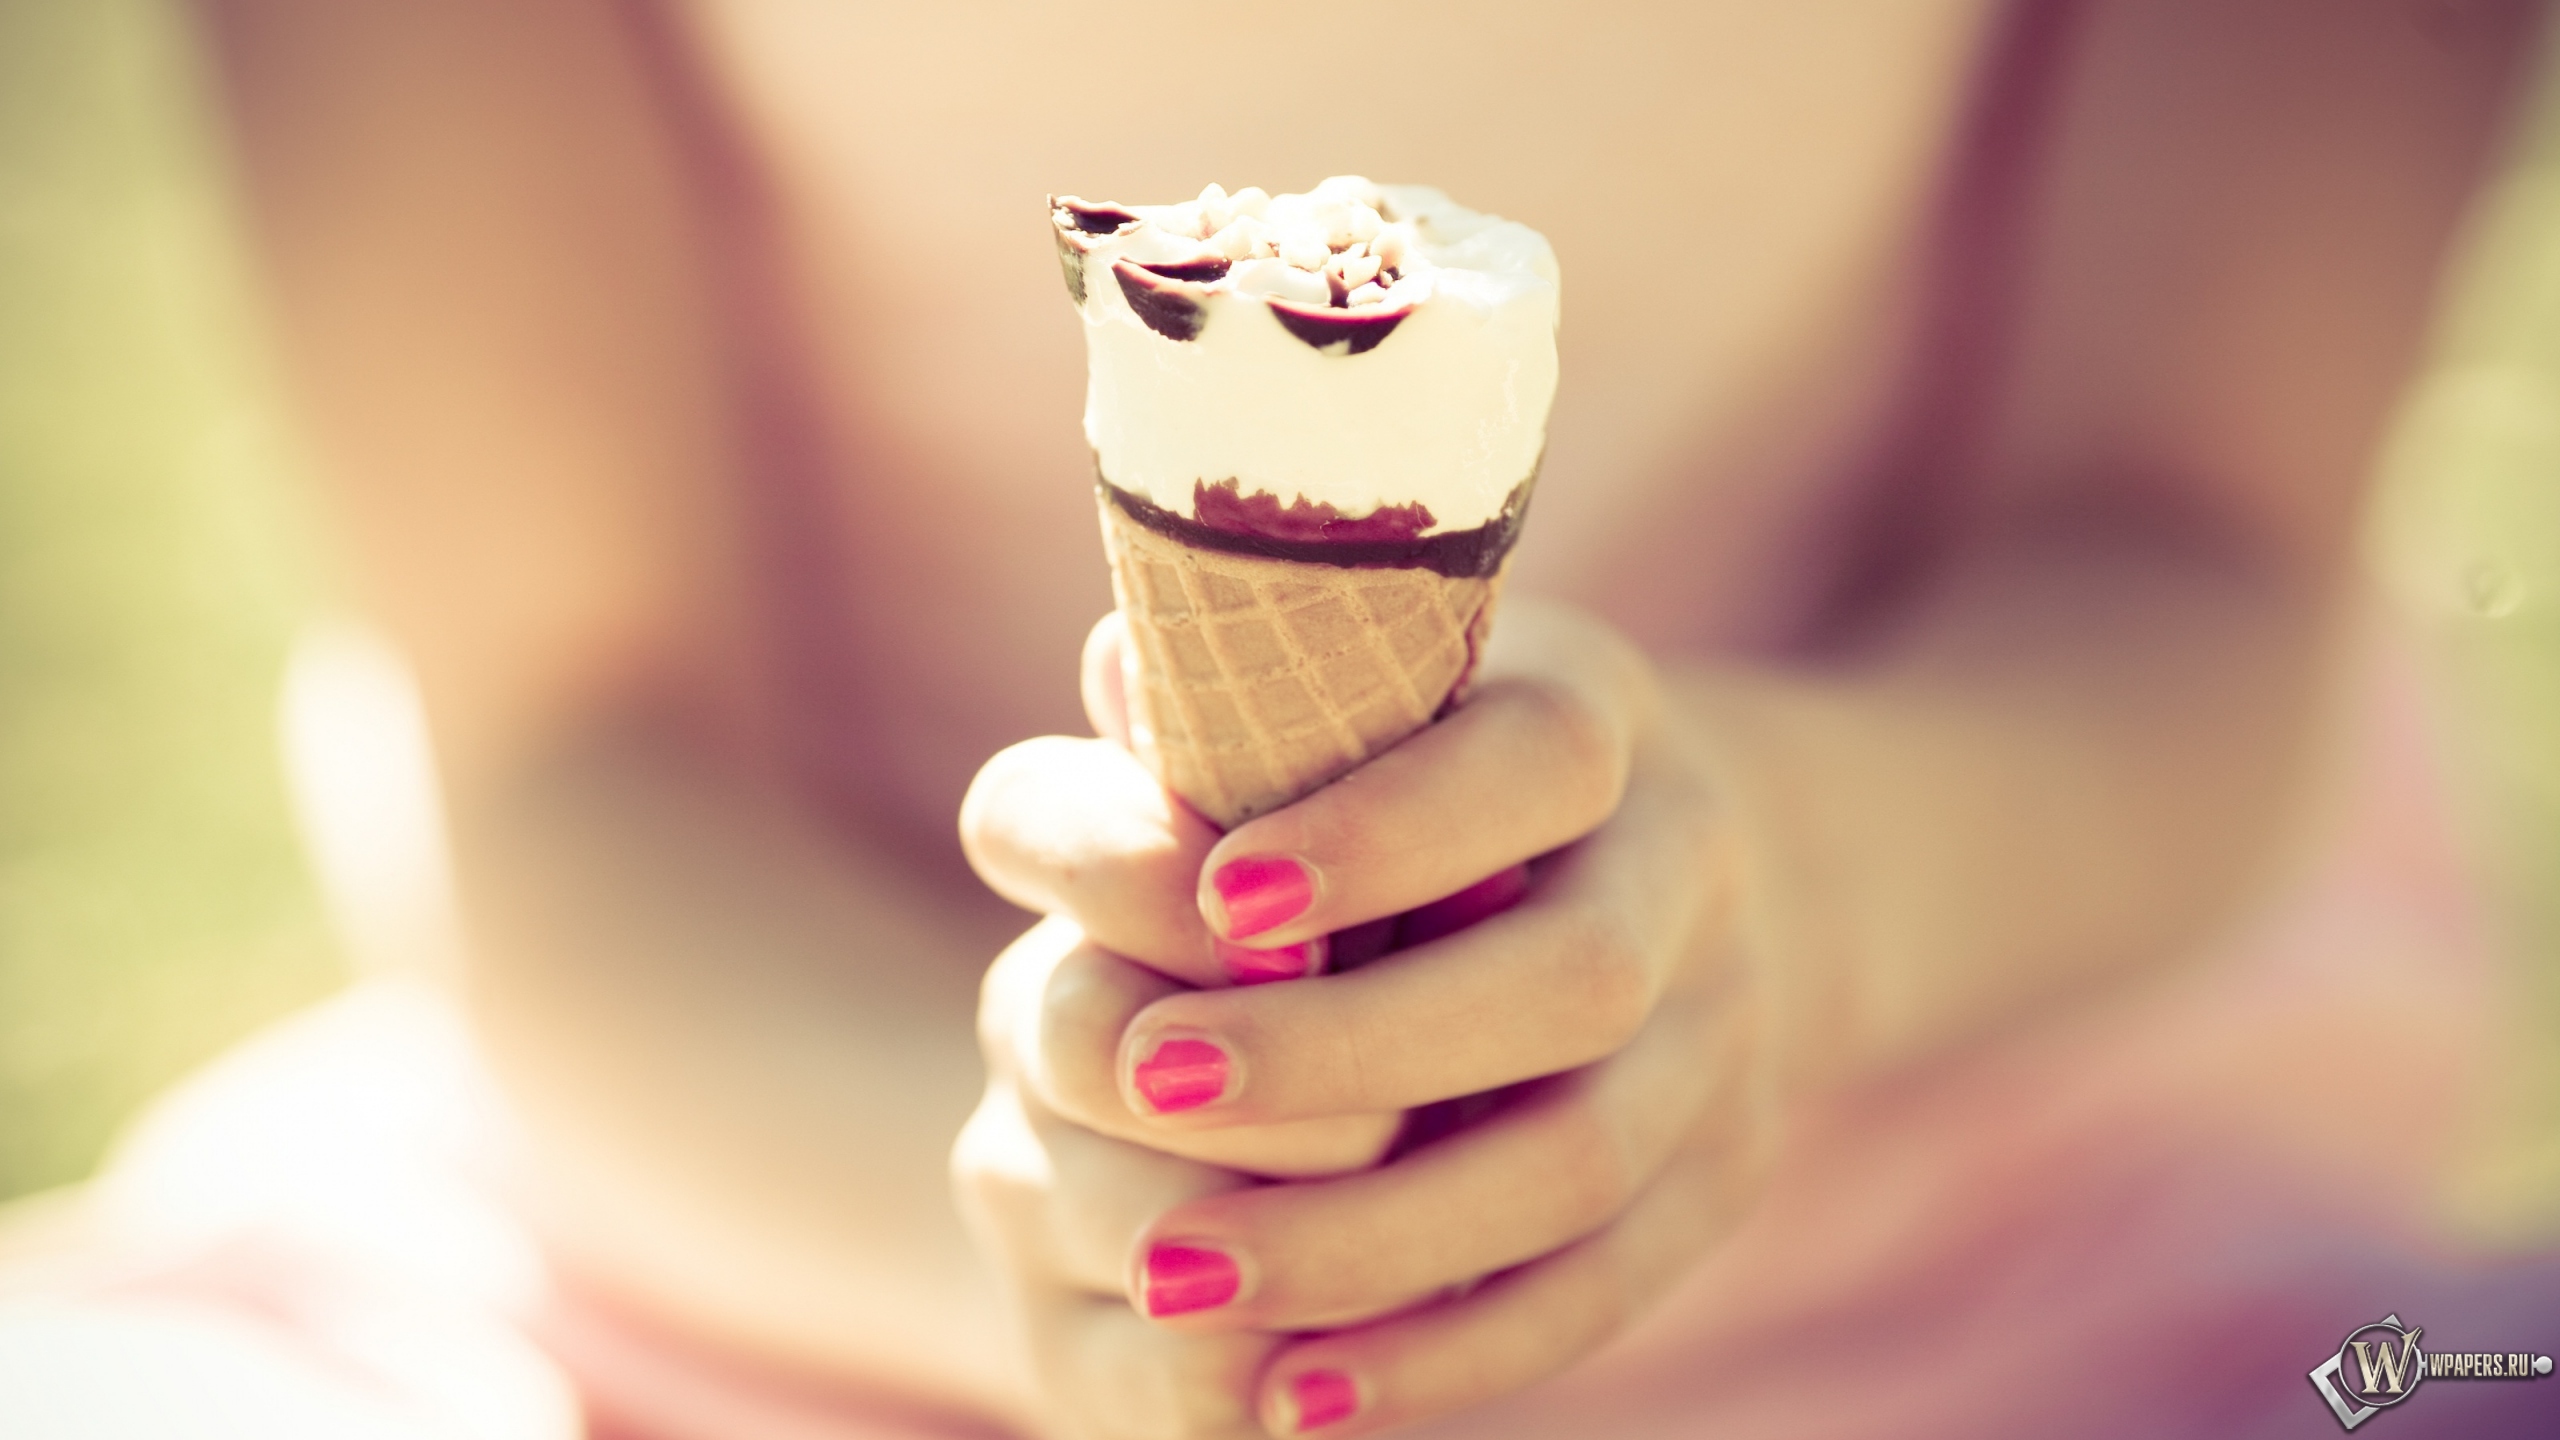 Шоколадное мороженое 2560x1440